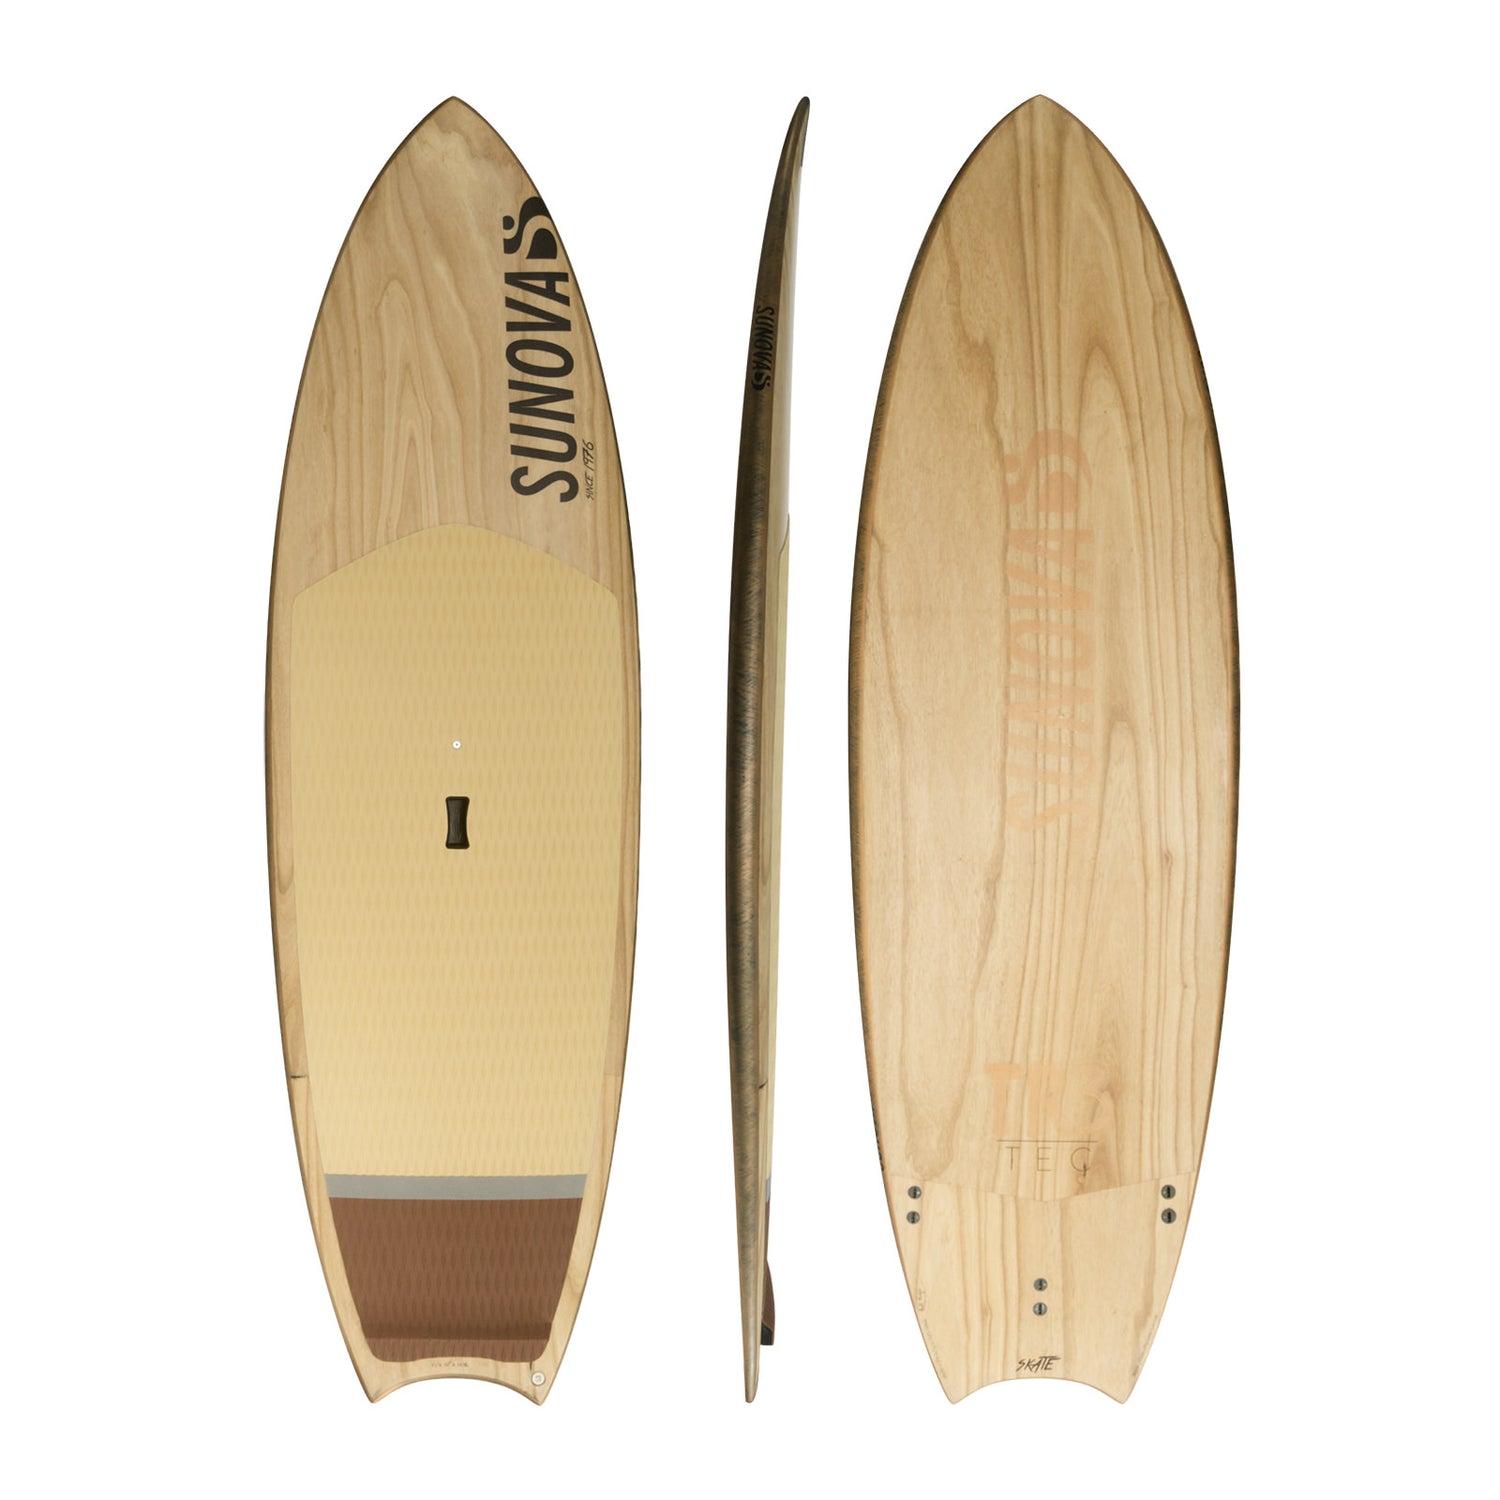 Drei Ansichten des Sunova Skate Wave SUP Board in der TR3 Bauweise.